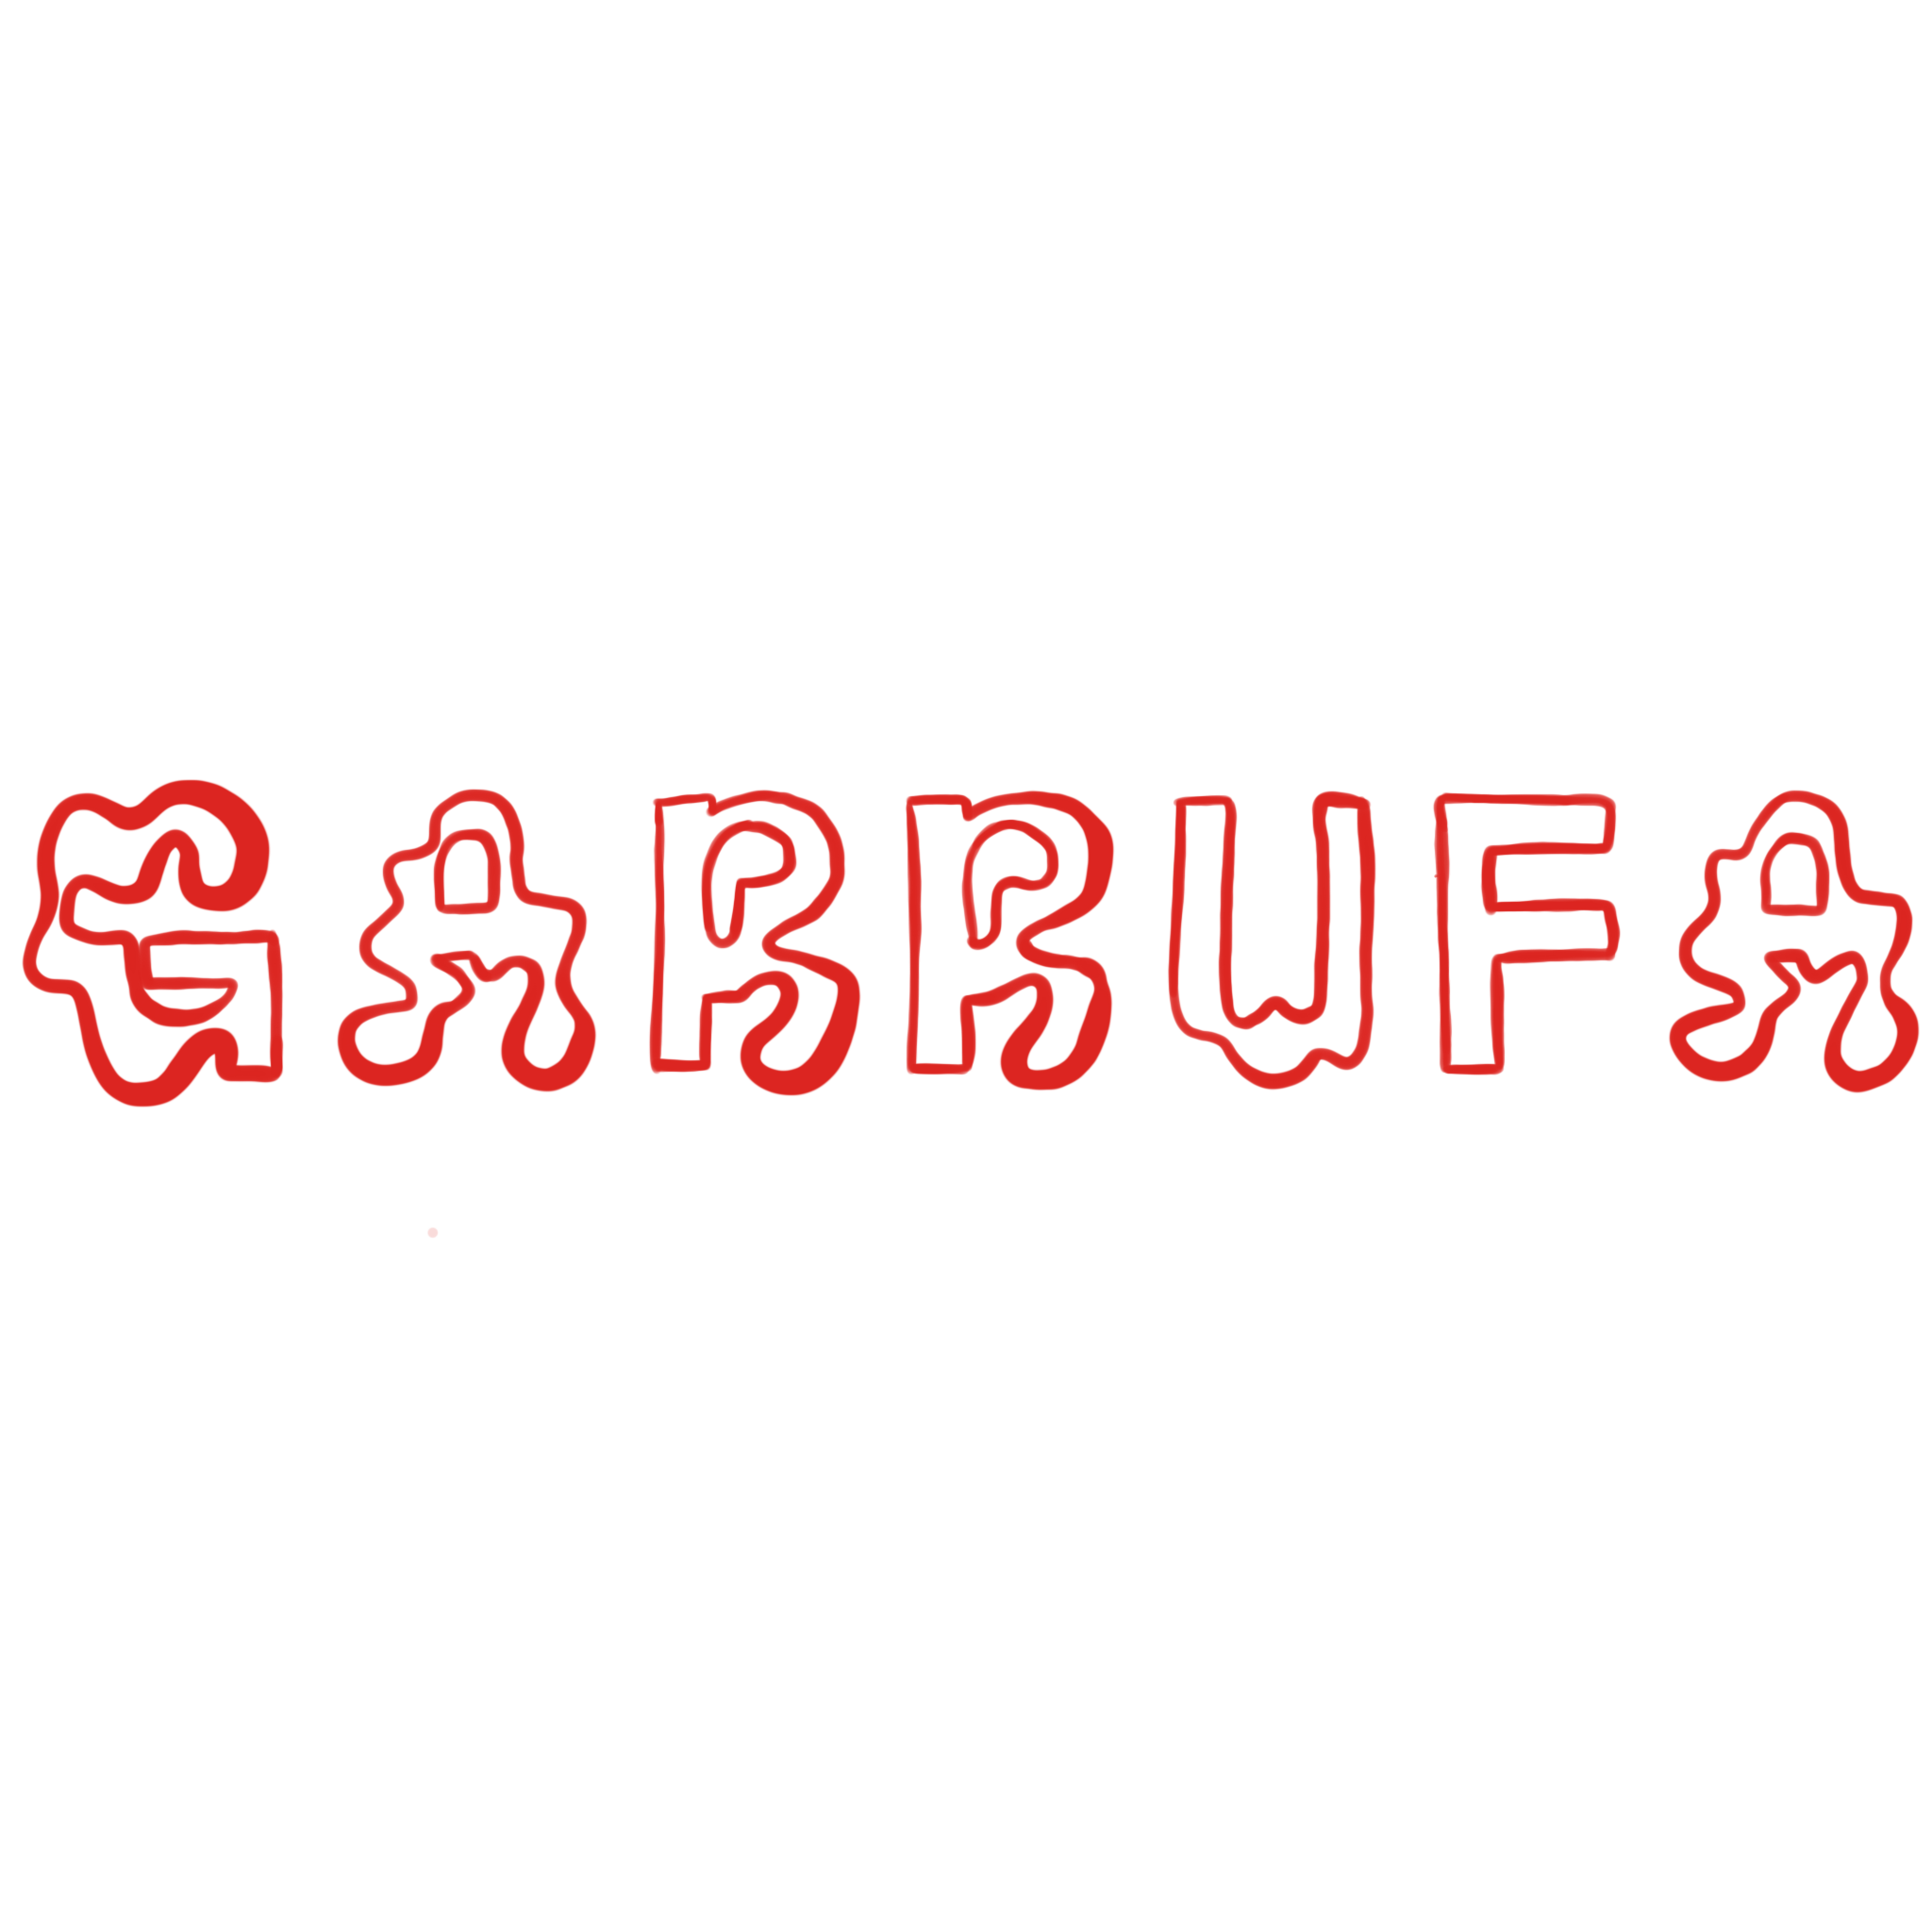 Garrufa